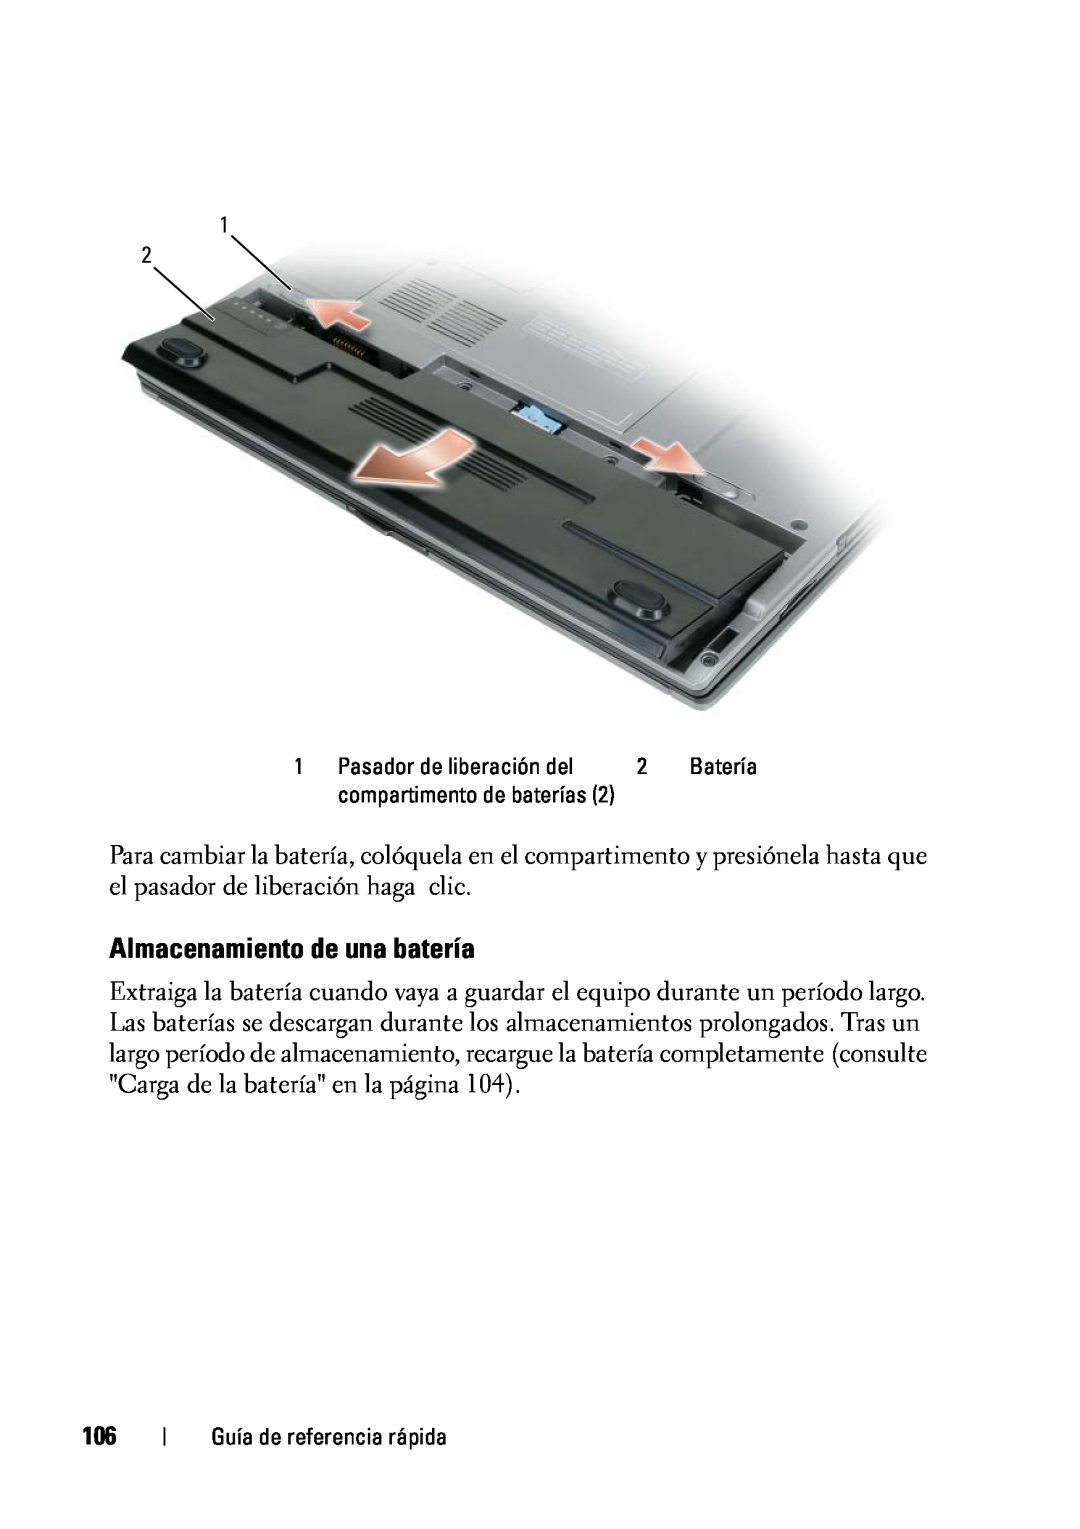 Dell D430 manual Almacenamiento de una batería, Batería, compartimento de baterías 